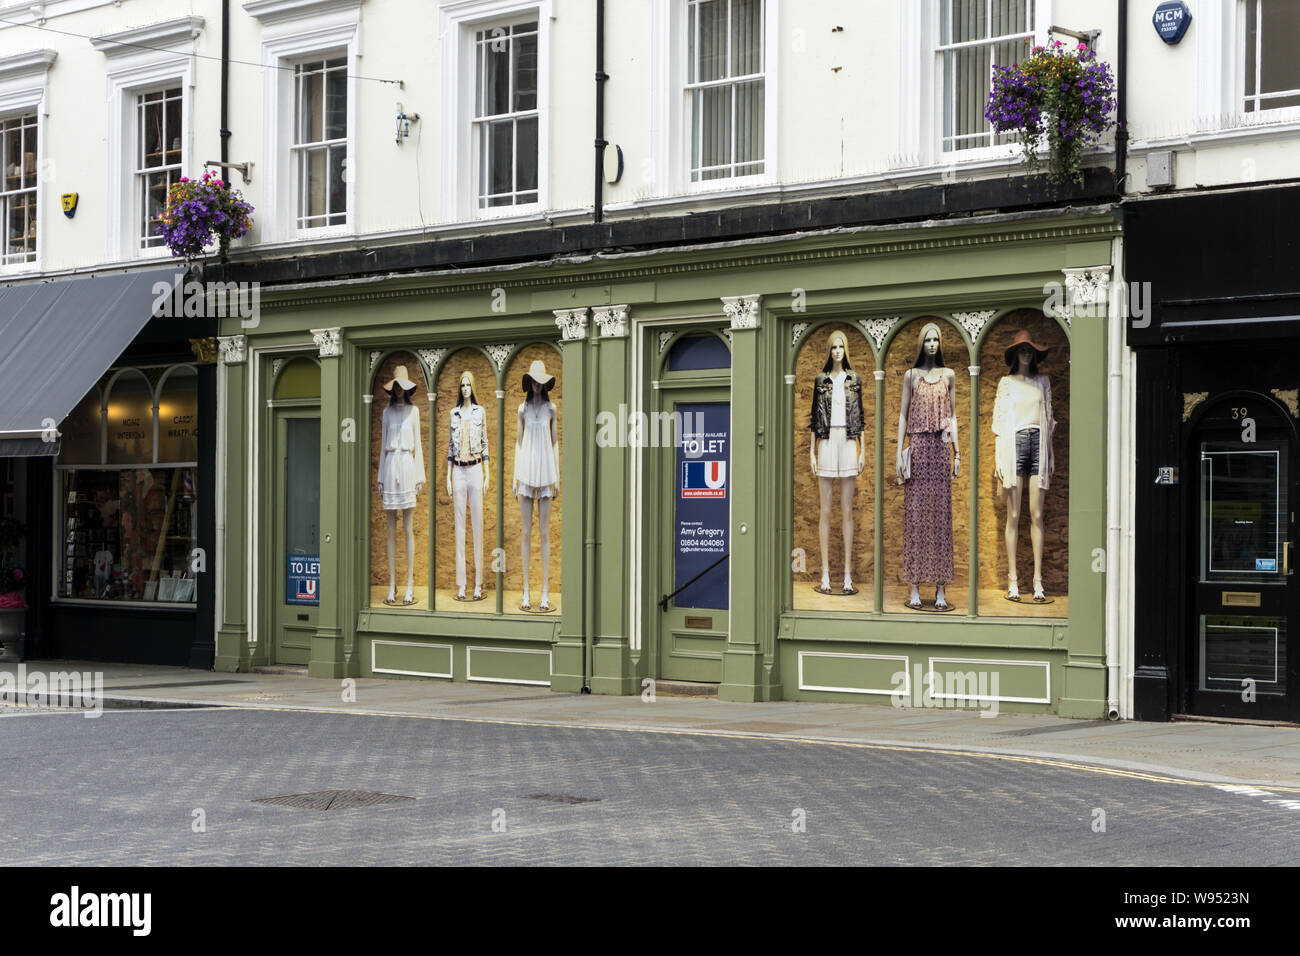 La façade double vide shop locaux précédemment occupés par Adams Boulangerie, St Giles St, Norethampton, Royaume-Uni ; fenêtres décorées par des posters de mannequins Banque D'Images